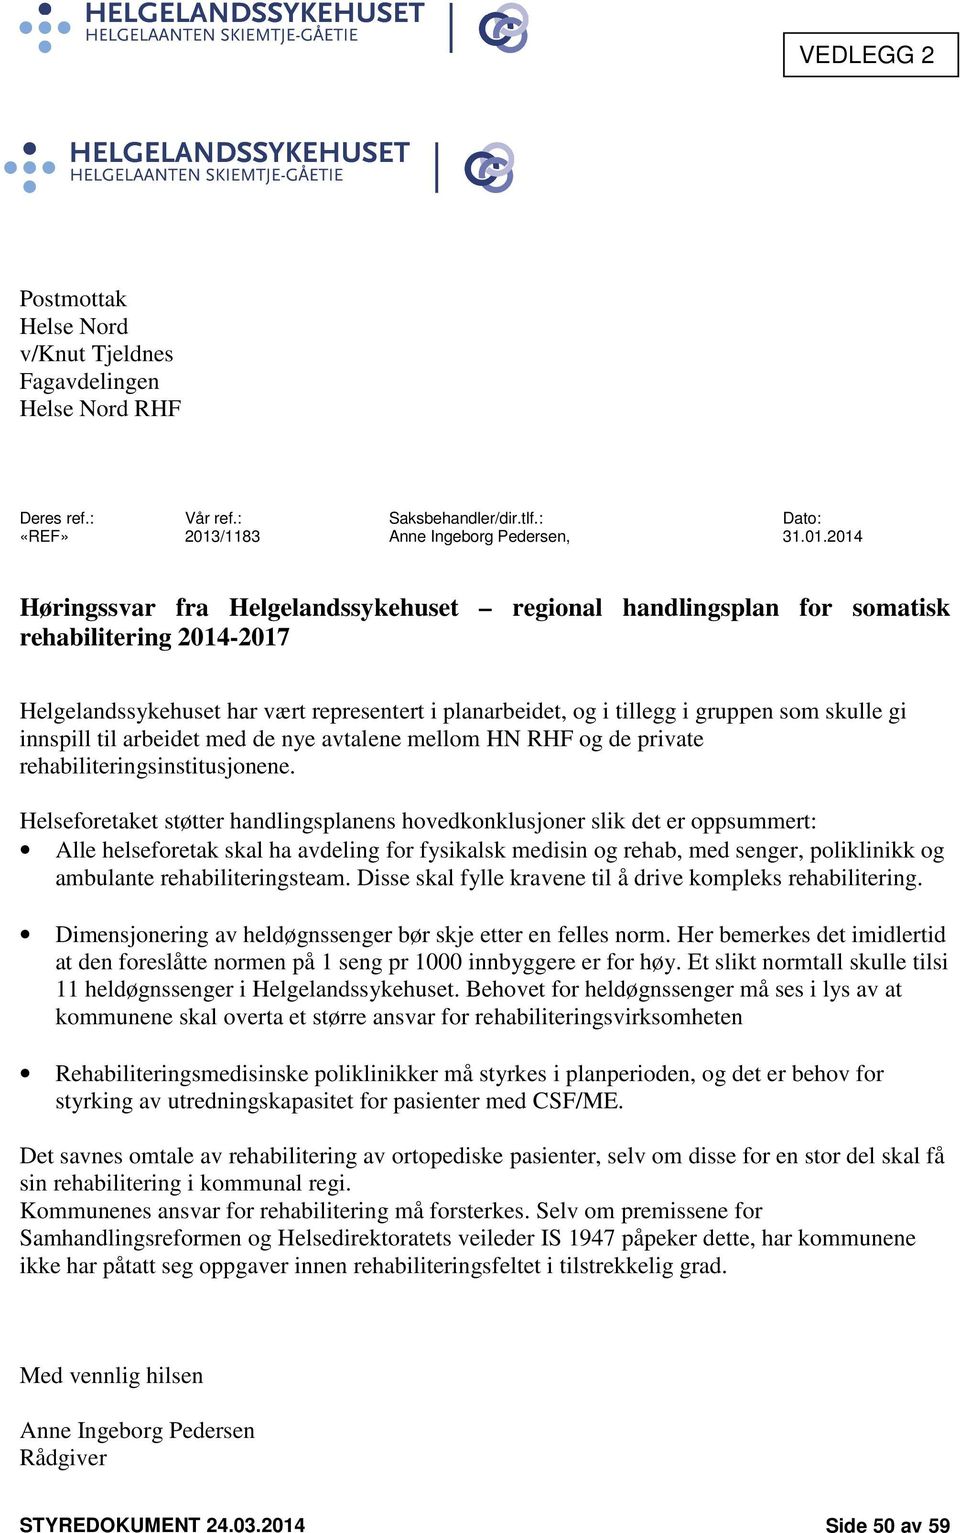 2014 Høringssvar fra Helgelandssykehuset regional handlingsplan for somatisk rehabilitering 2014-2017 Helgelandssykehuset har vært representert i planarbeidet, og i tillegg i gruppen som skulle gi